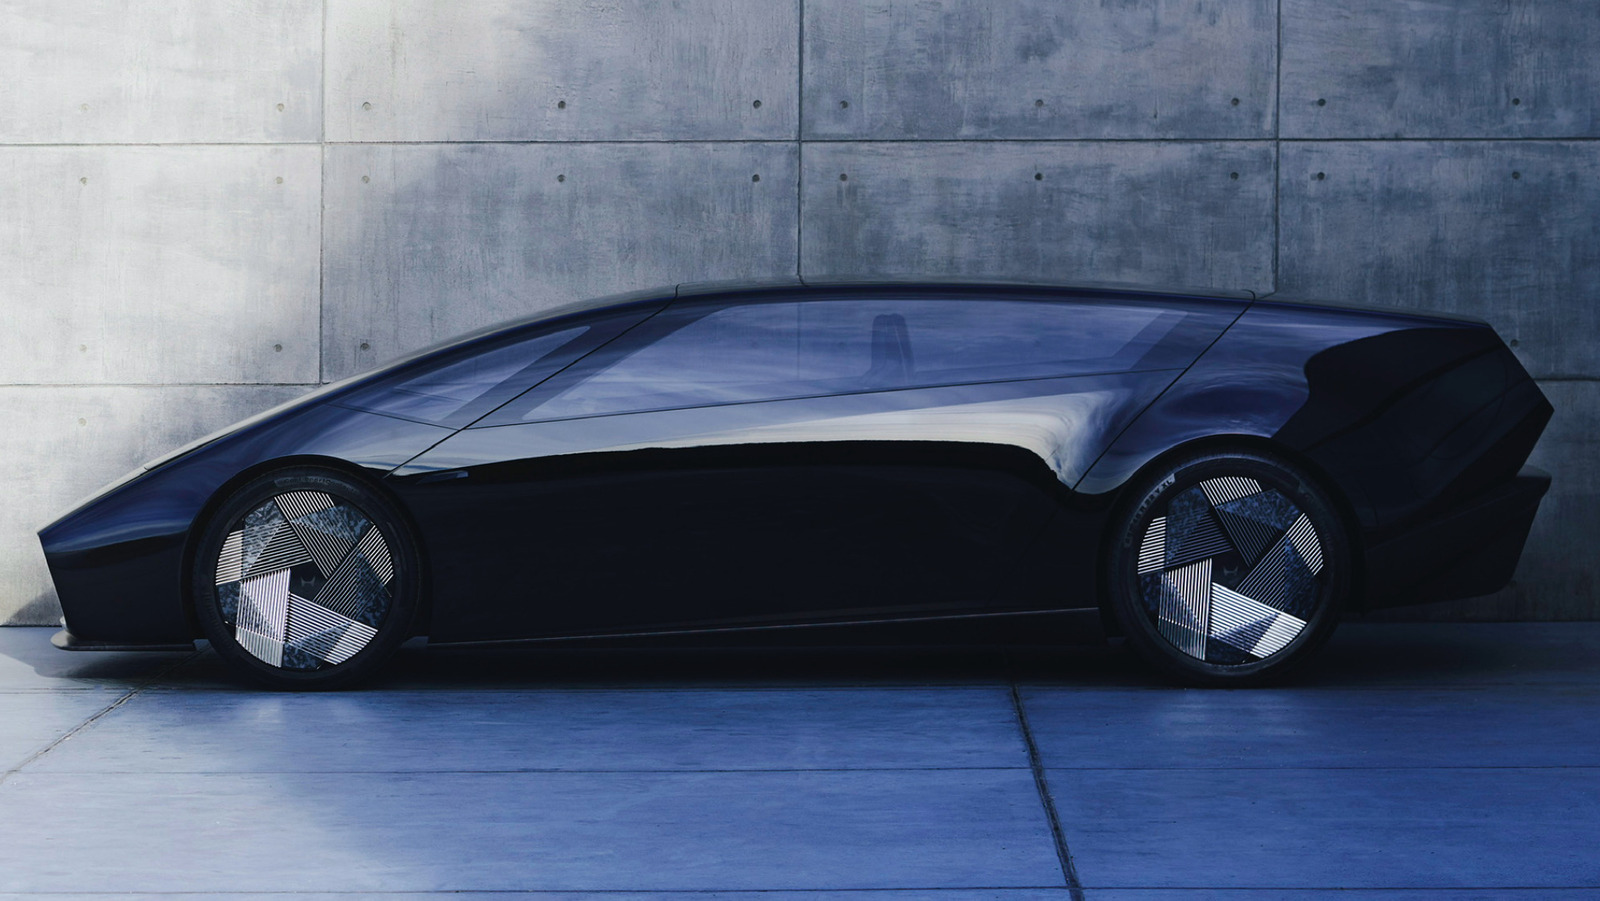 Estos conceptos futuristas del Honda Serie 0 eléctricos no están tan lejos como parecen